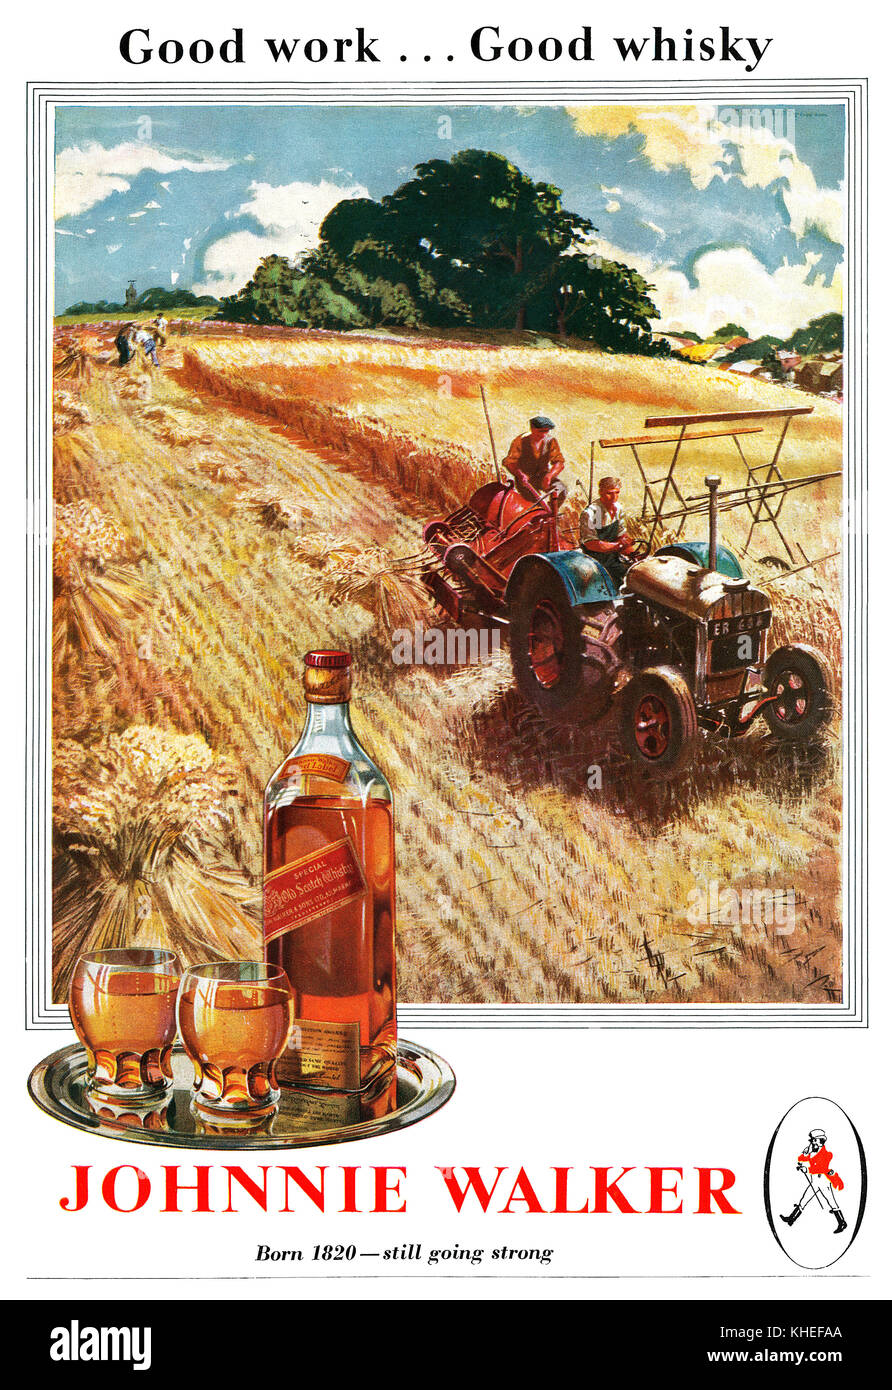 1945 British pubblicità per Johnnie Walker Scotch Whisky, illustrato da Clive Uptton. Foto Stock